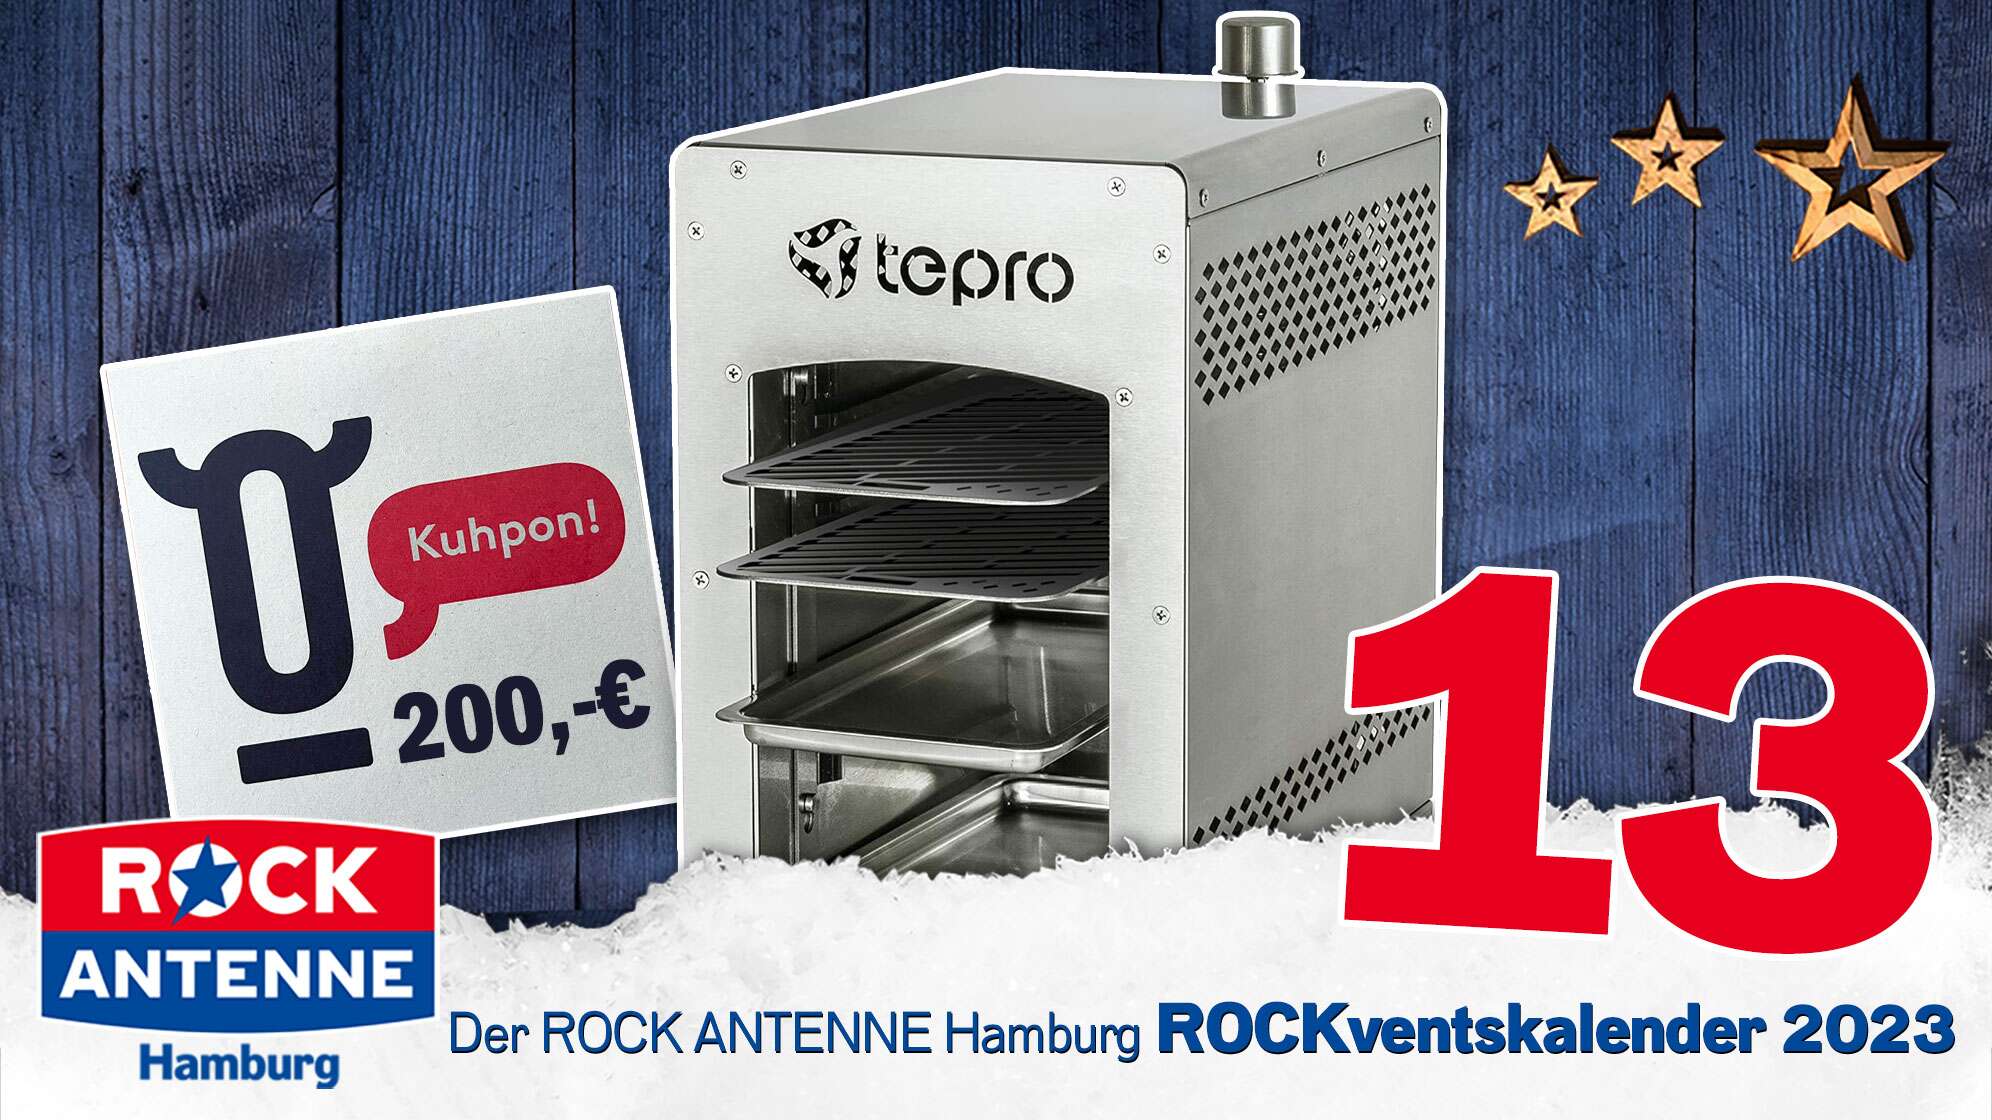 ROCK ANTENNE Hamburg ROCKventskalender Türchen 13: Ein Hochleistungs-Steakgrill und ein Wagyu Fleisch KUHPON im Wert von 200 Euro